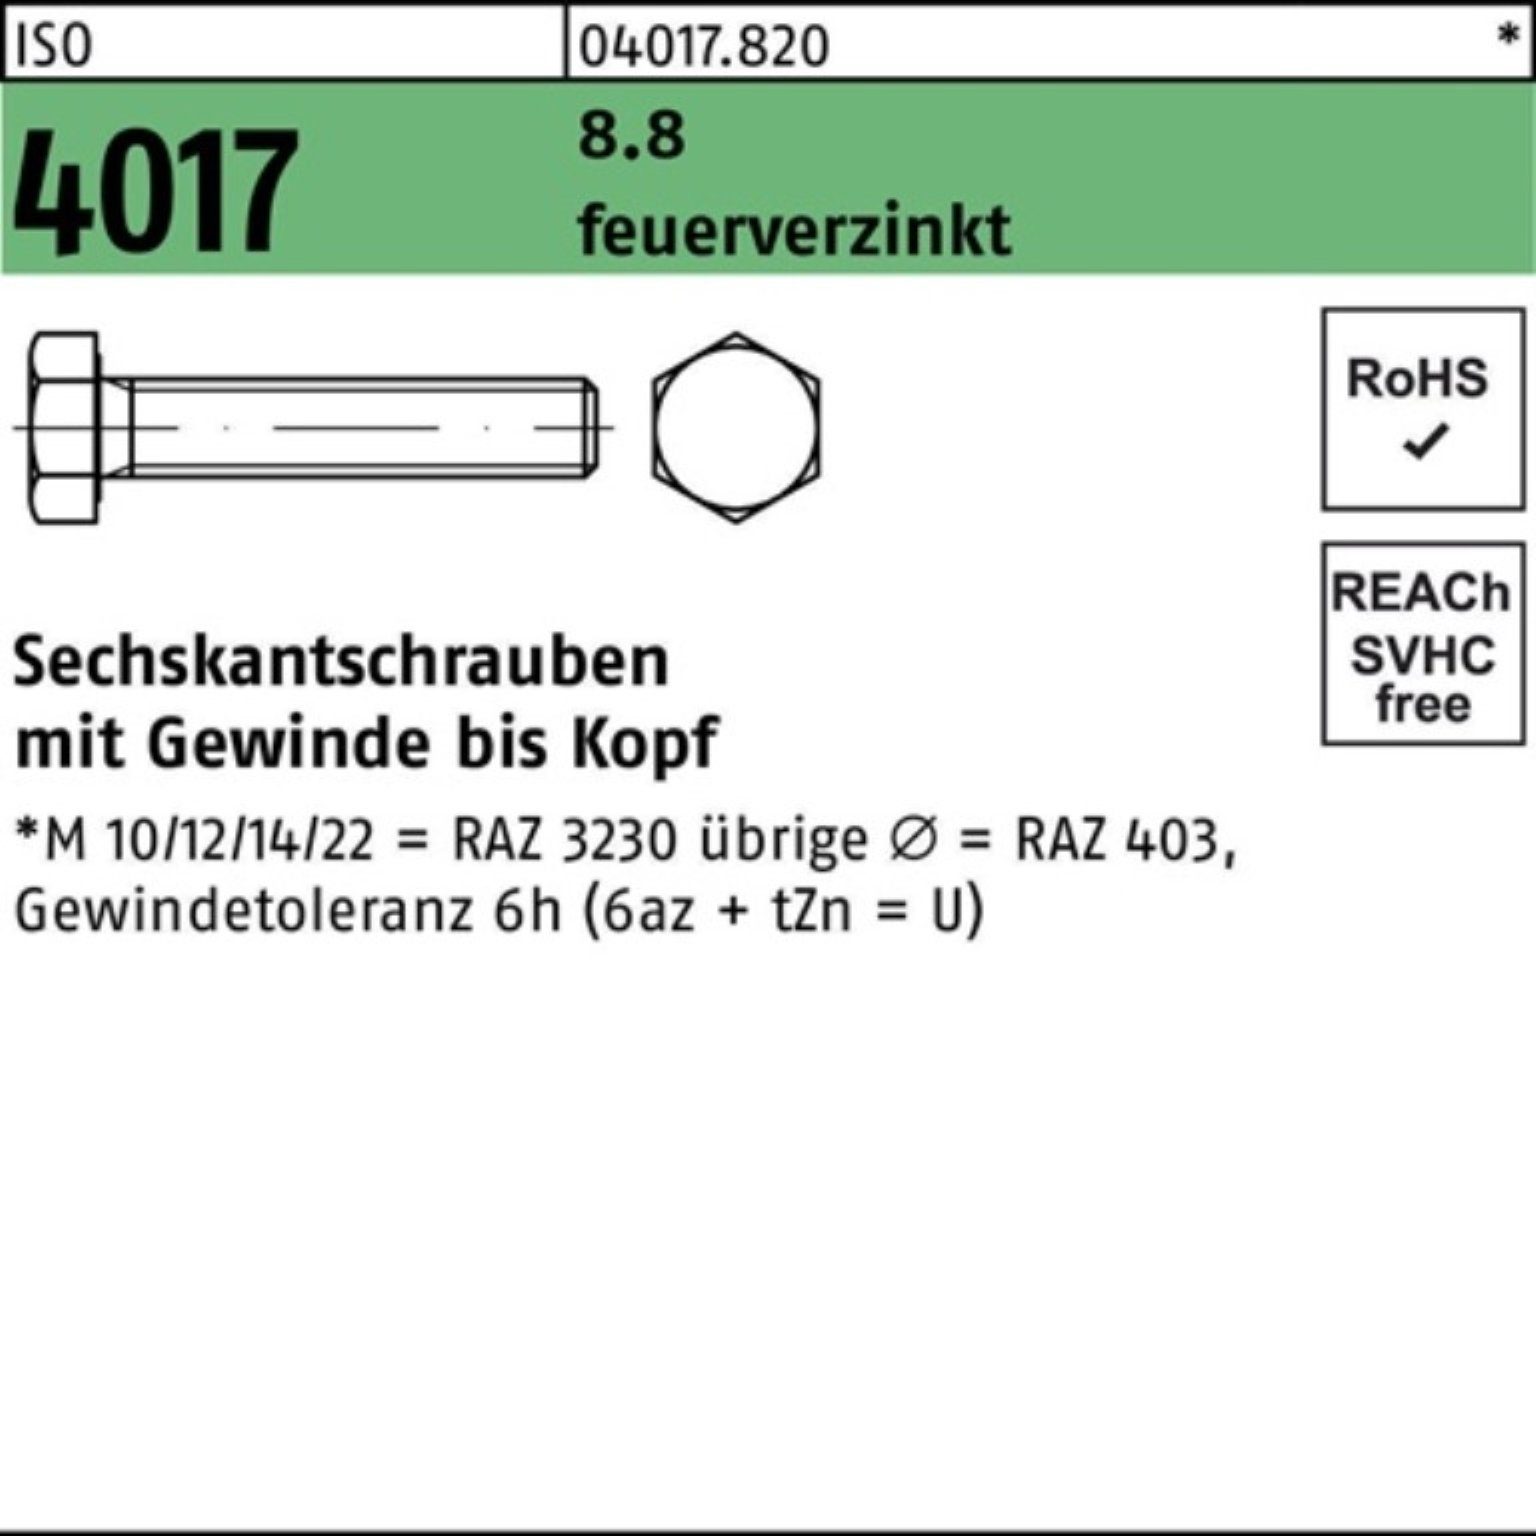 Bufab Sechskantschraube 100er Sechskantschraube 70 4017 M12x St VG 8.8 ISO 50 feuerverz. Pack